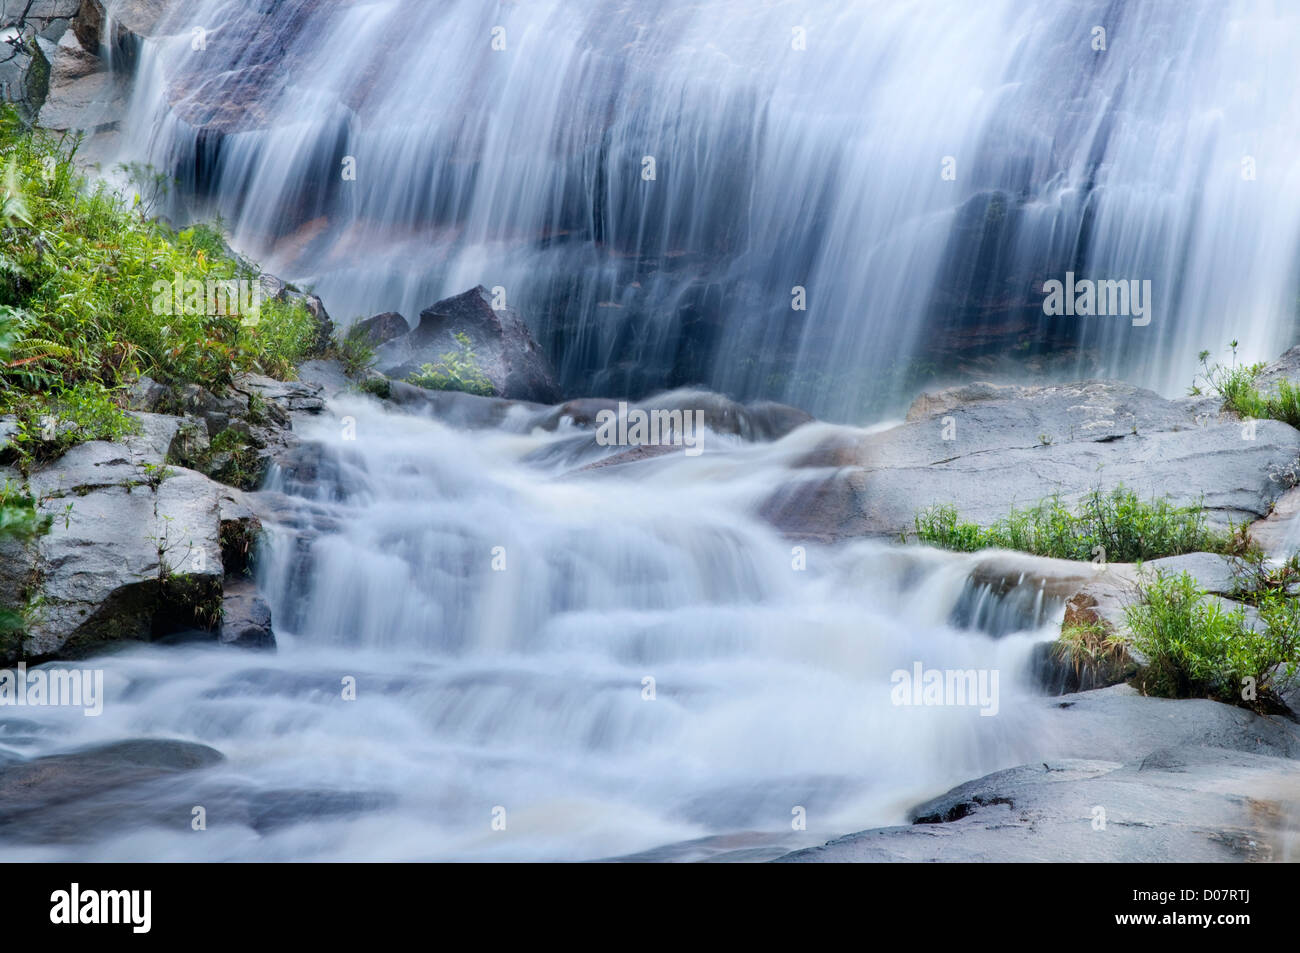 Natural waterfall at Gunung Stong State Park, Kelantan, Malaysia Stock Photo